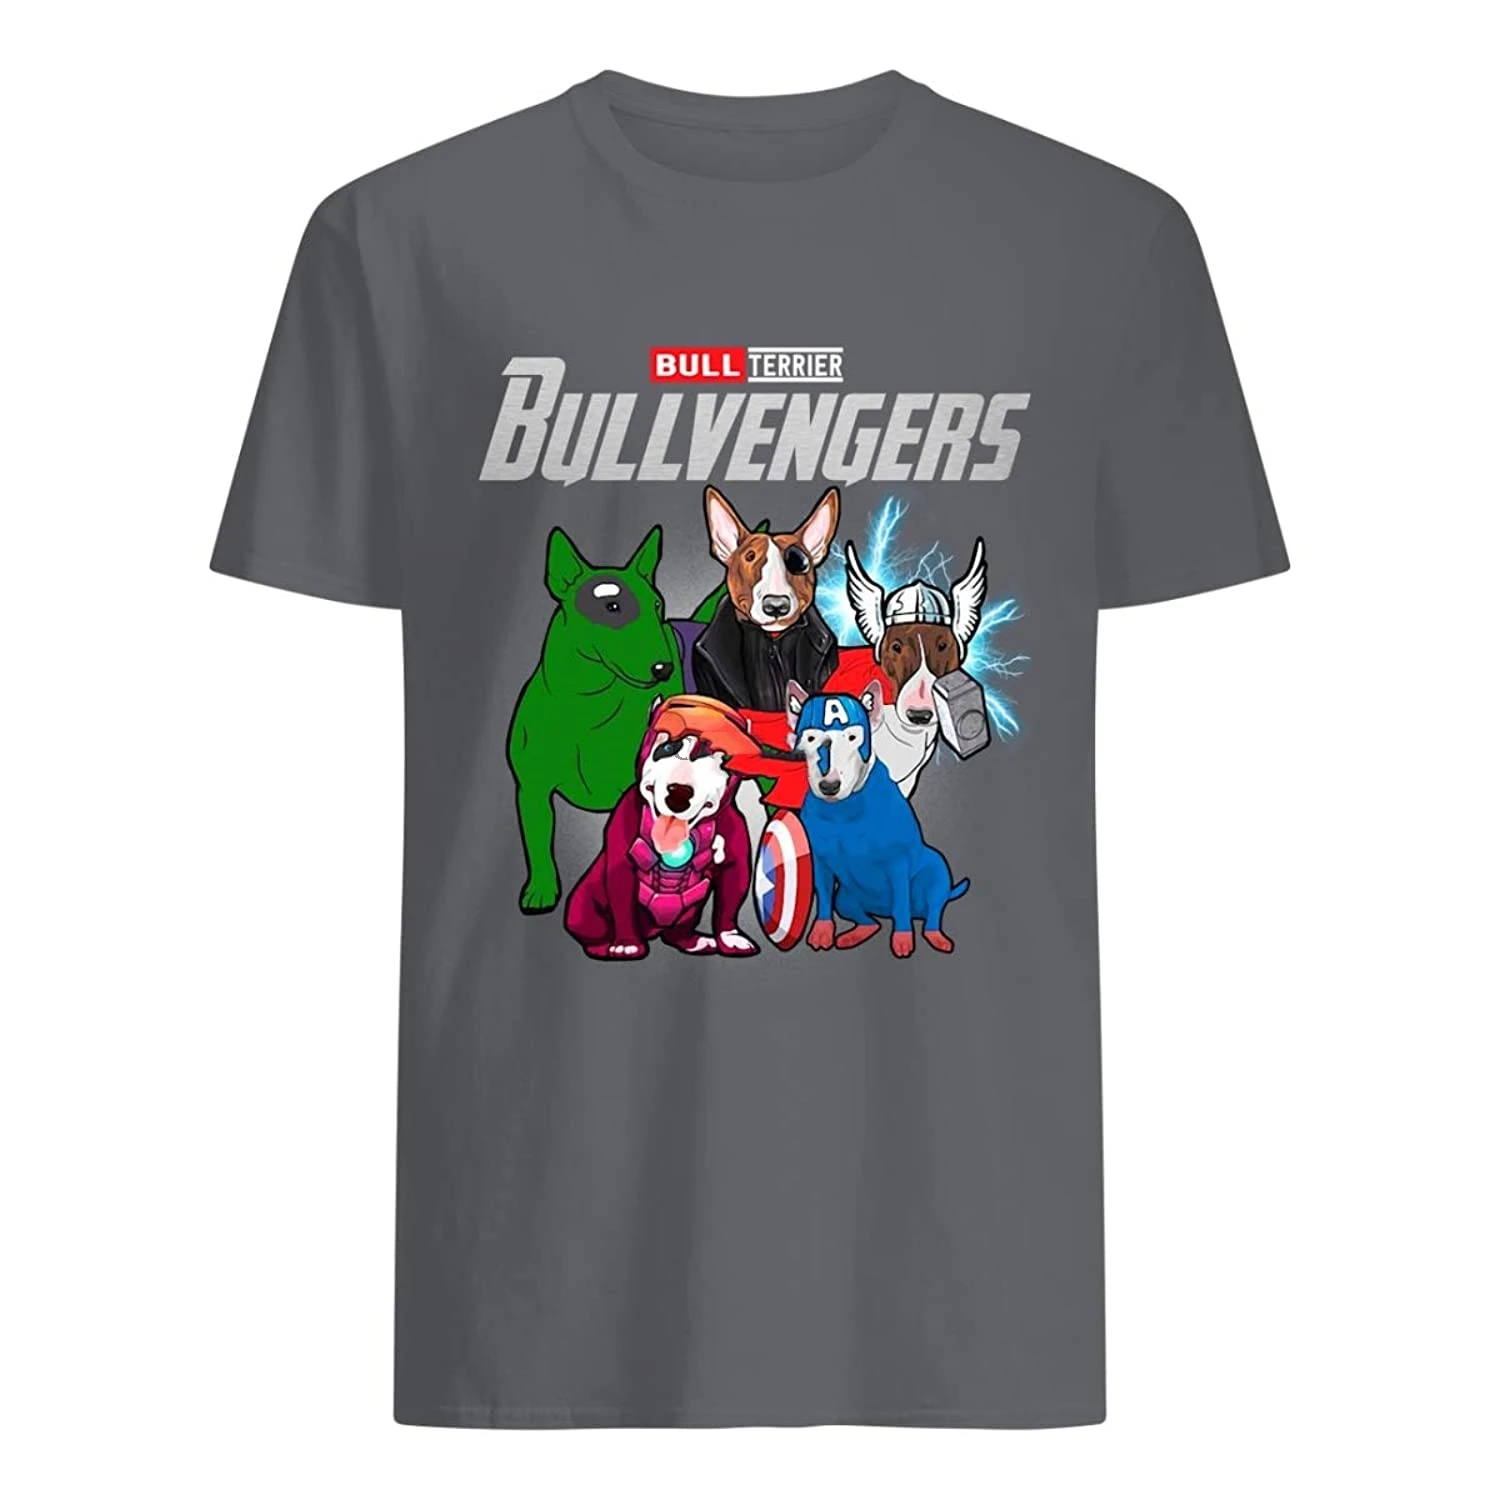 

Забавная футболка с изображением реалити-камня Бультерьера, подарка для любителей собак, бульвенгера, футболка для женщин, мужчин, фанатов ...